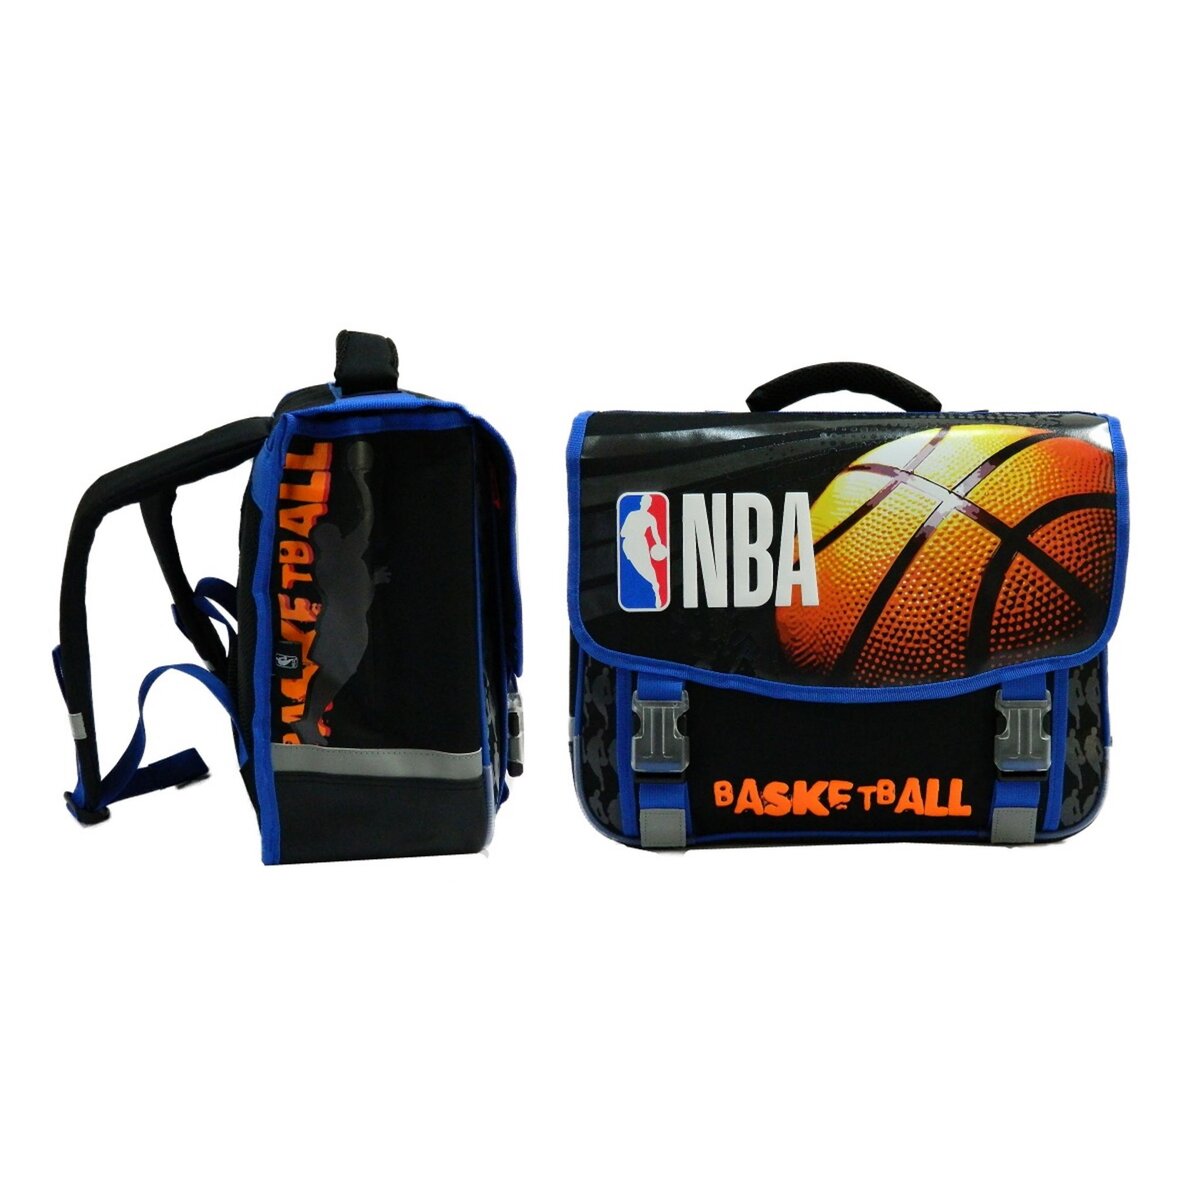 Cartable 41cm - 2 compartiments + 1 poche - Bandes réfléchissantes - Bretelles ergonomiques  et ajustables - NBA